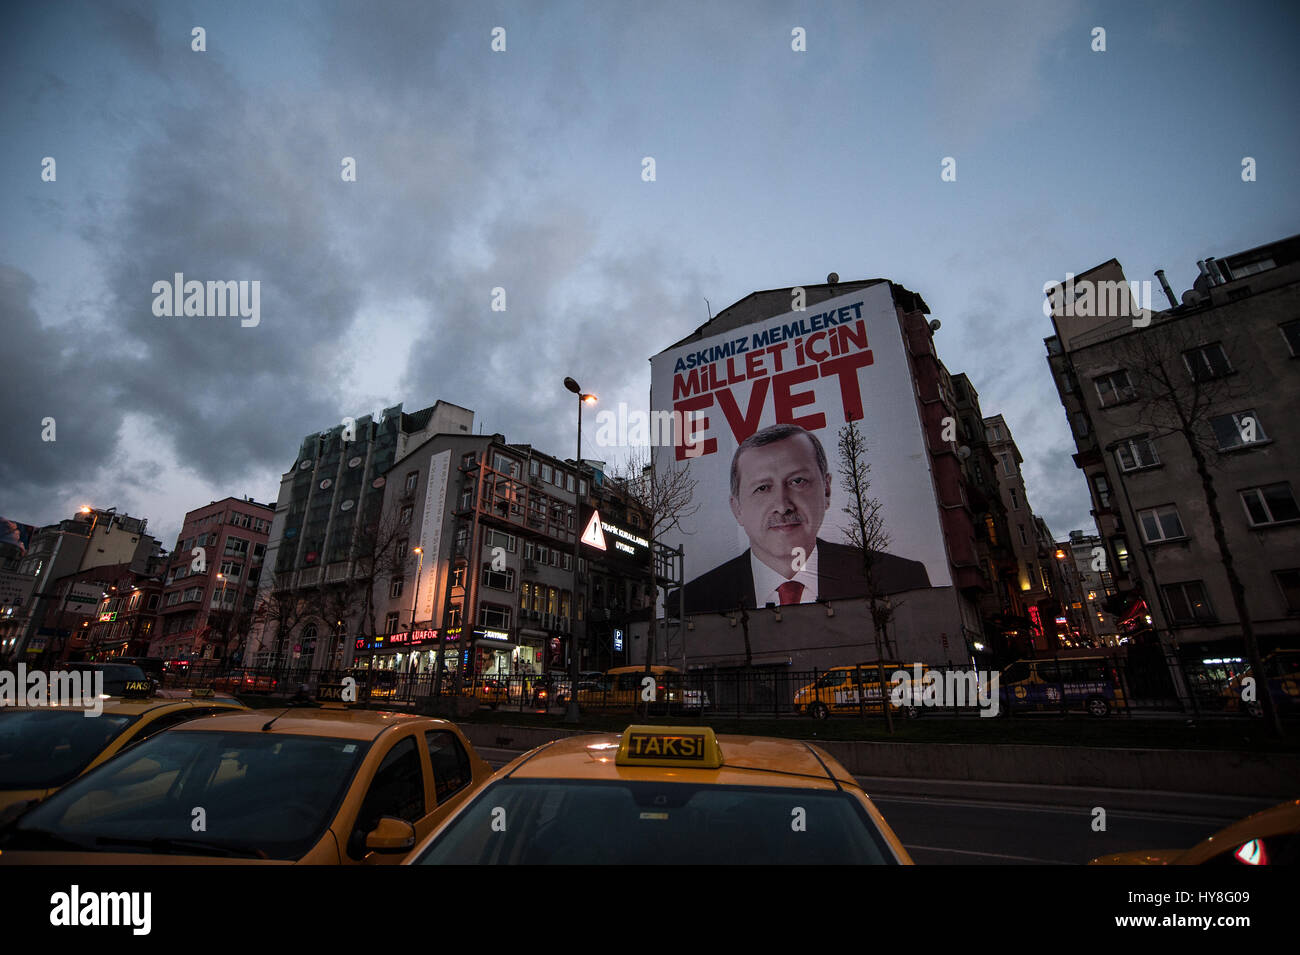 Référendum turc des affiches de campagne du Oui Recep Tayyip Erdoğan à Istanbul Turquie Banque D'Images